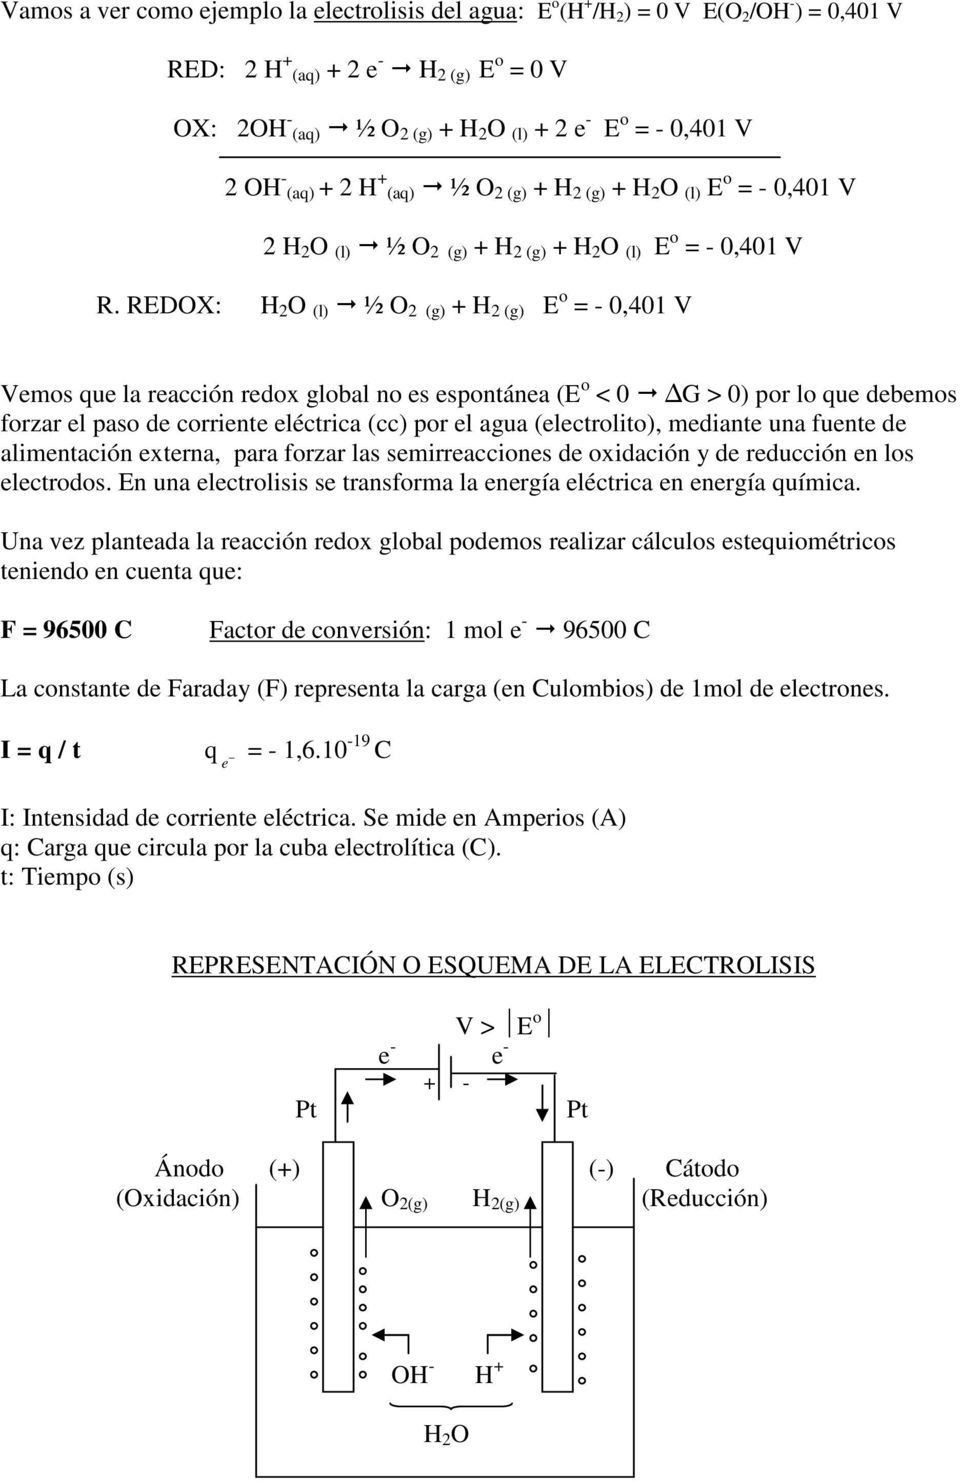 REDOX: H 2 O (l) ½ O 2 (g) + H 2 (g) E o = - 0,401 V Vemos que la reacción redox global no es espontánea (E o < 0 G > 0) por lo que debemos forzar el paso de corriente eléctrica (cc) por el agua